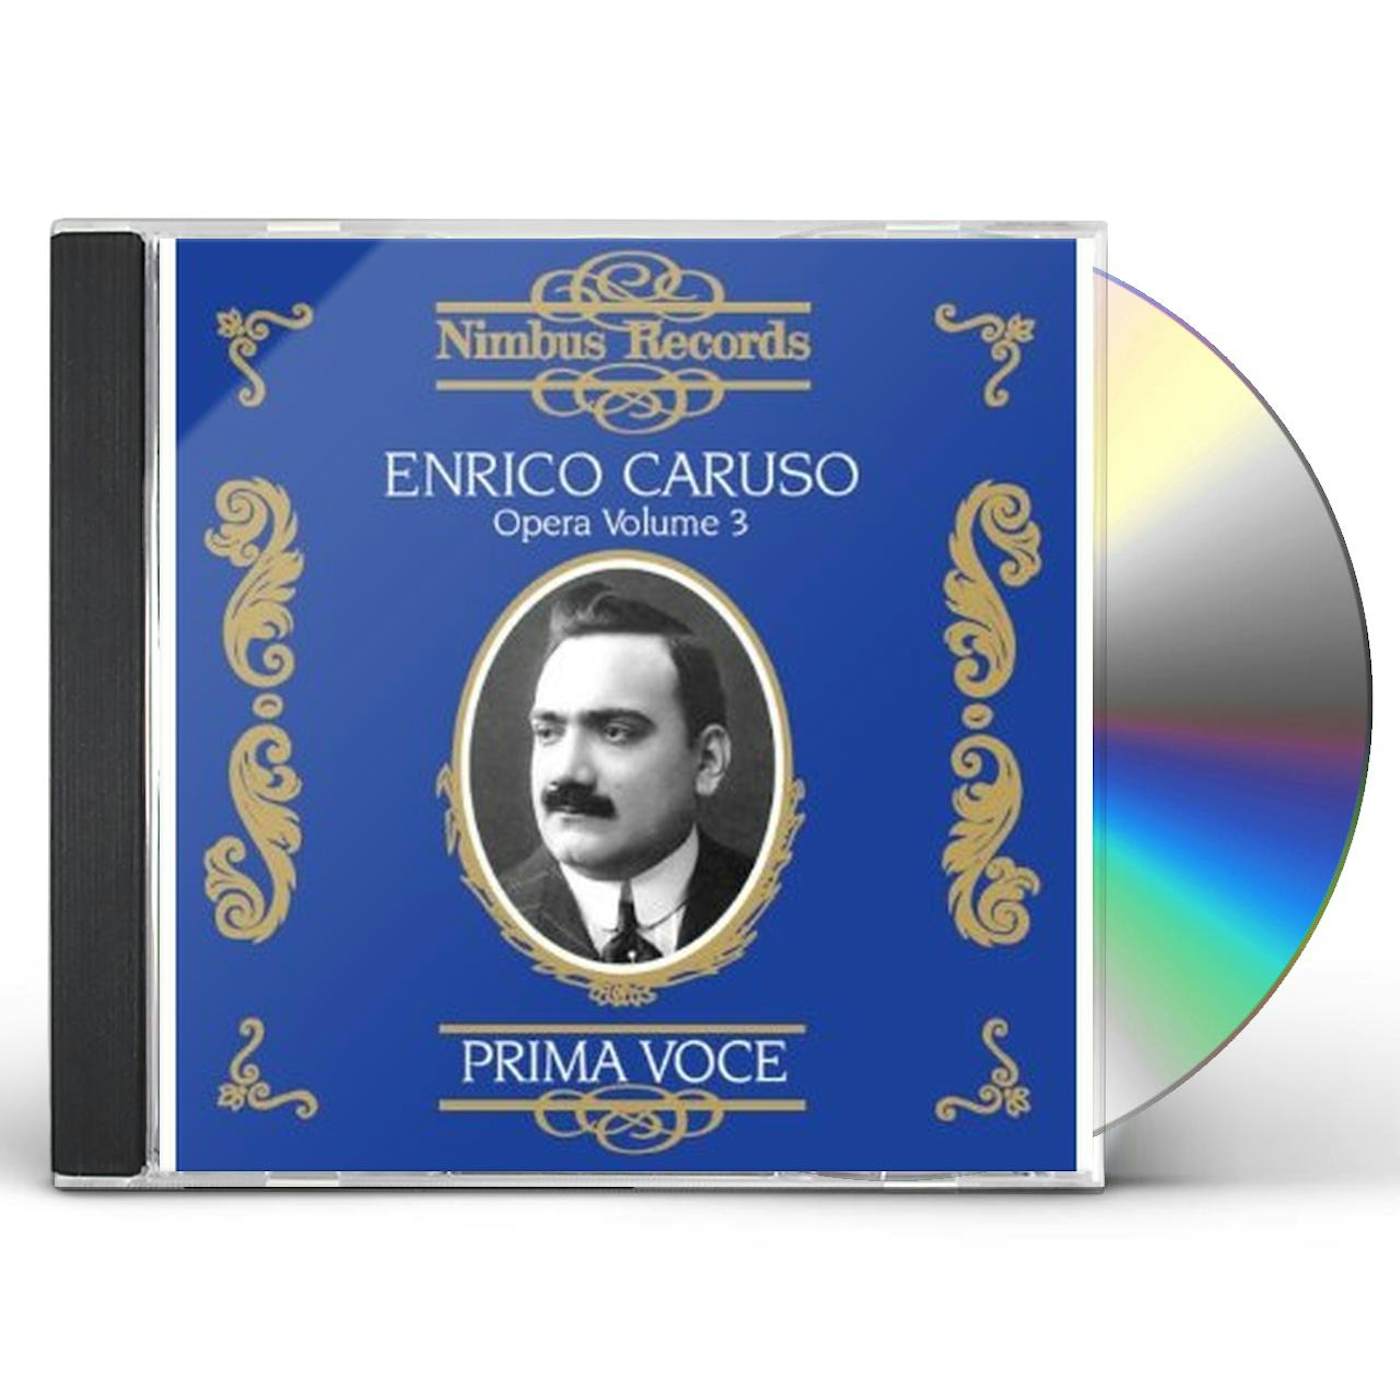 ENRICO CARUSO IN OPERA 3 CD